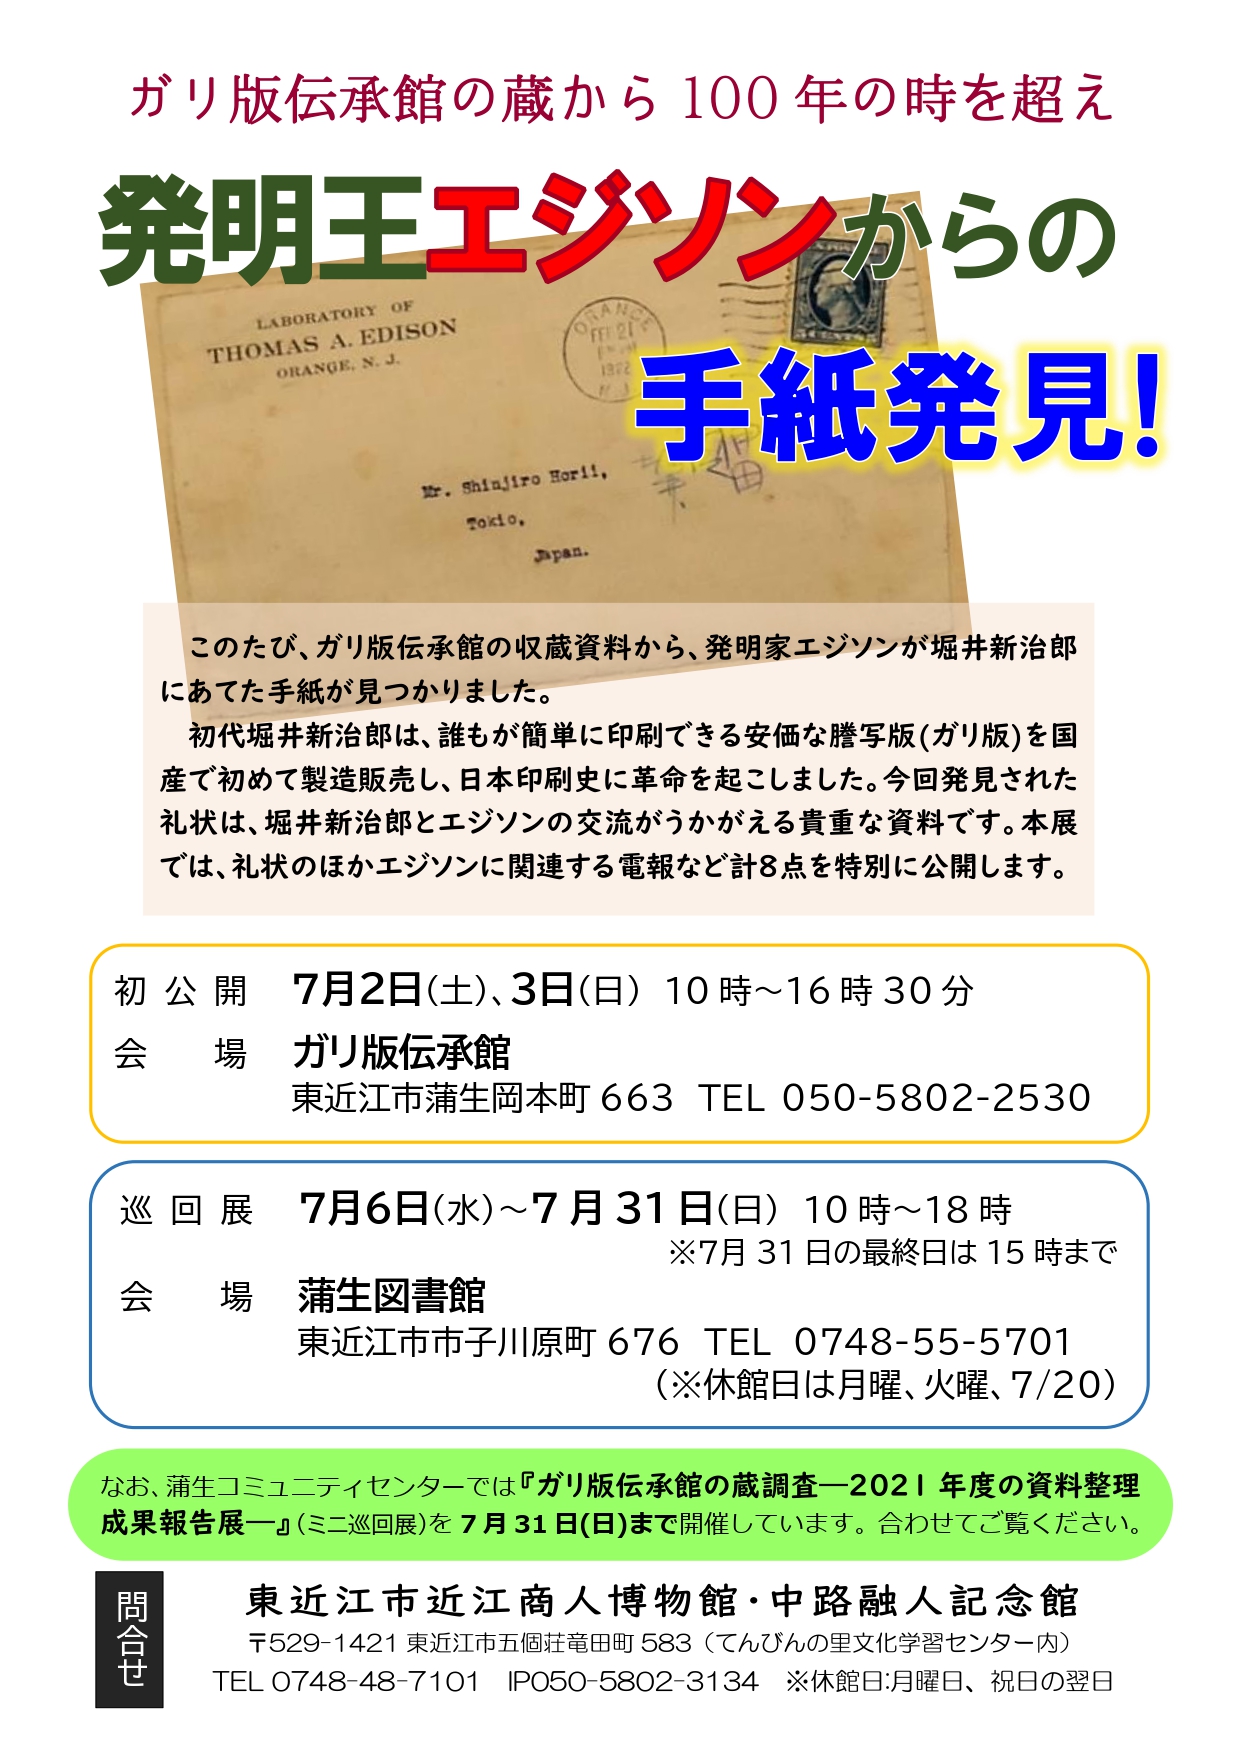 【5/26更新】東近江市のお祭り・イベント情報(中止、延期を含む)　※随時更新